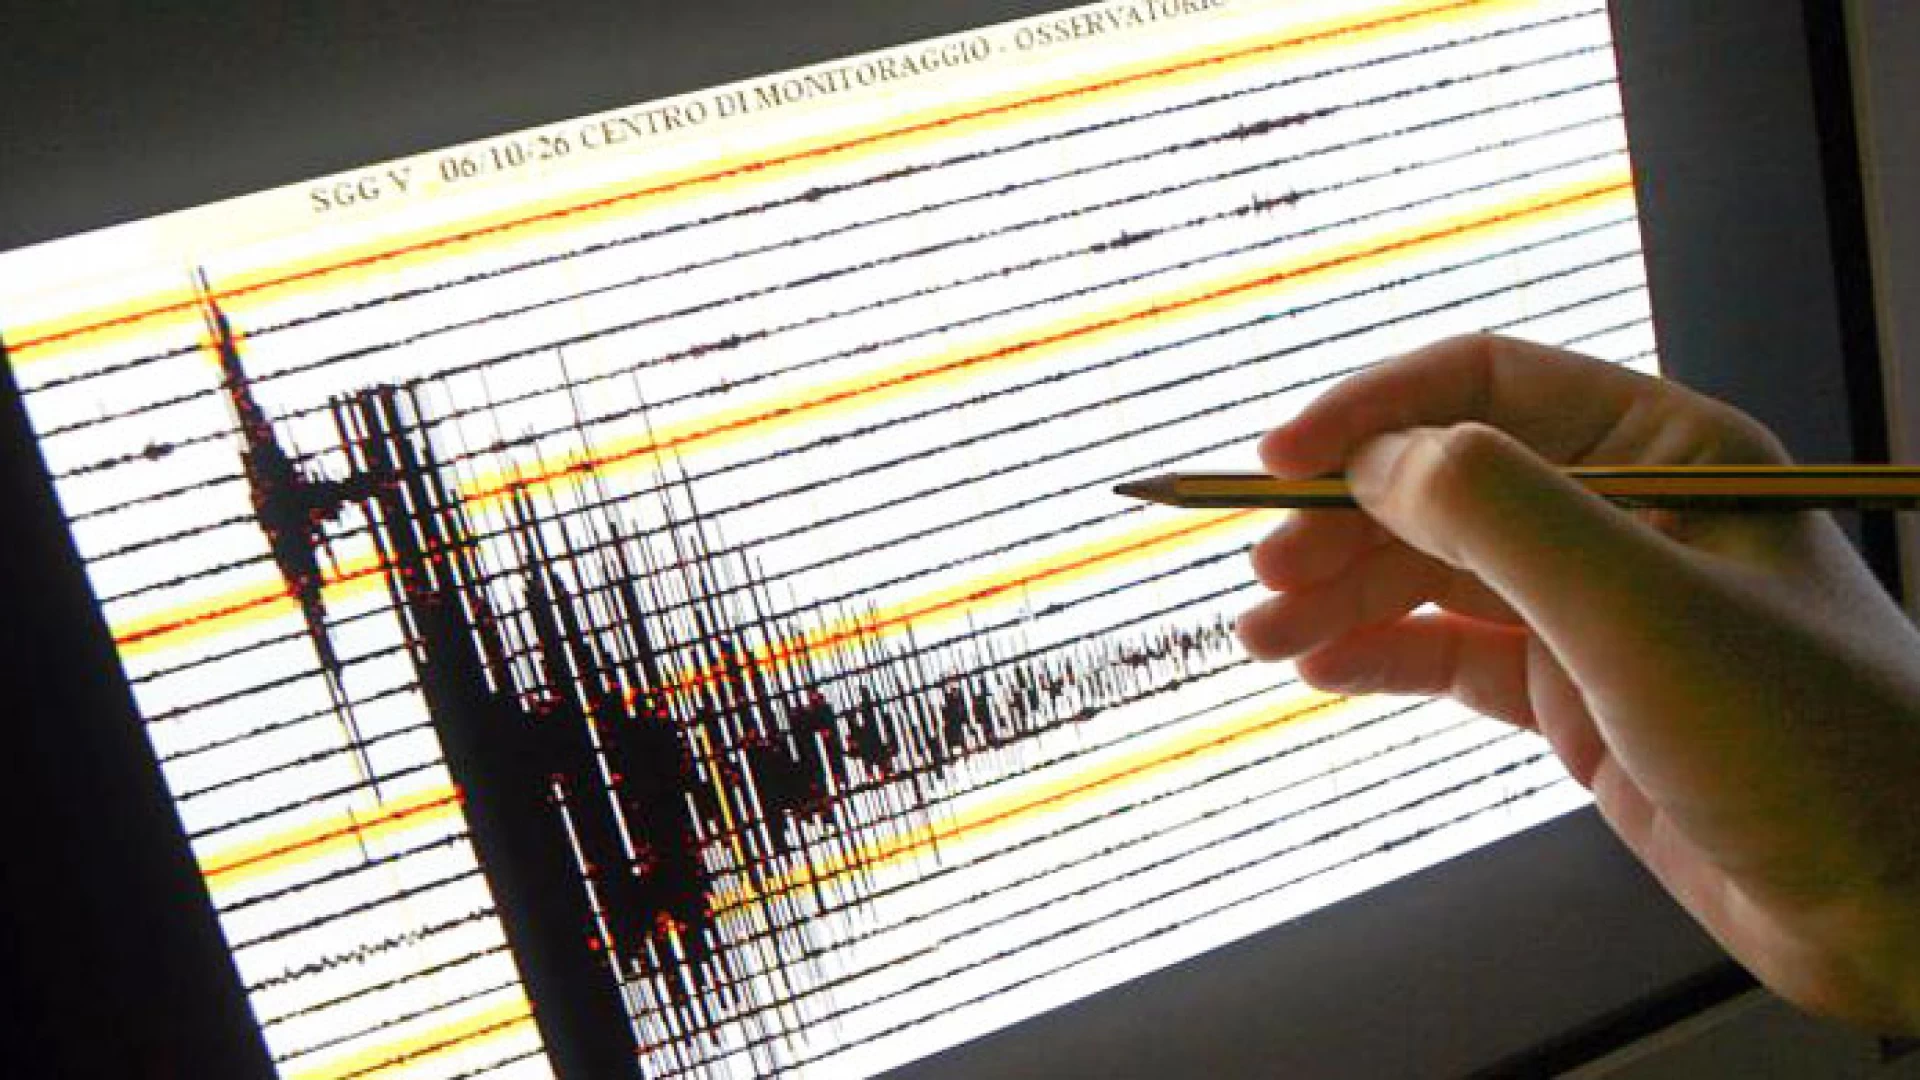 Isernia: trema la terra alle 19:30. Una lieve scossa di terremoto registrata dalla sala sismica dell’Ingv di magnitudo 2.1.